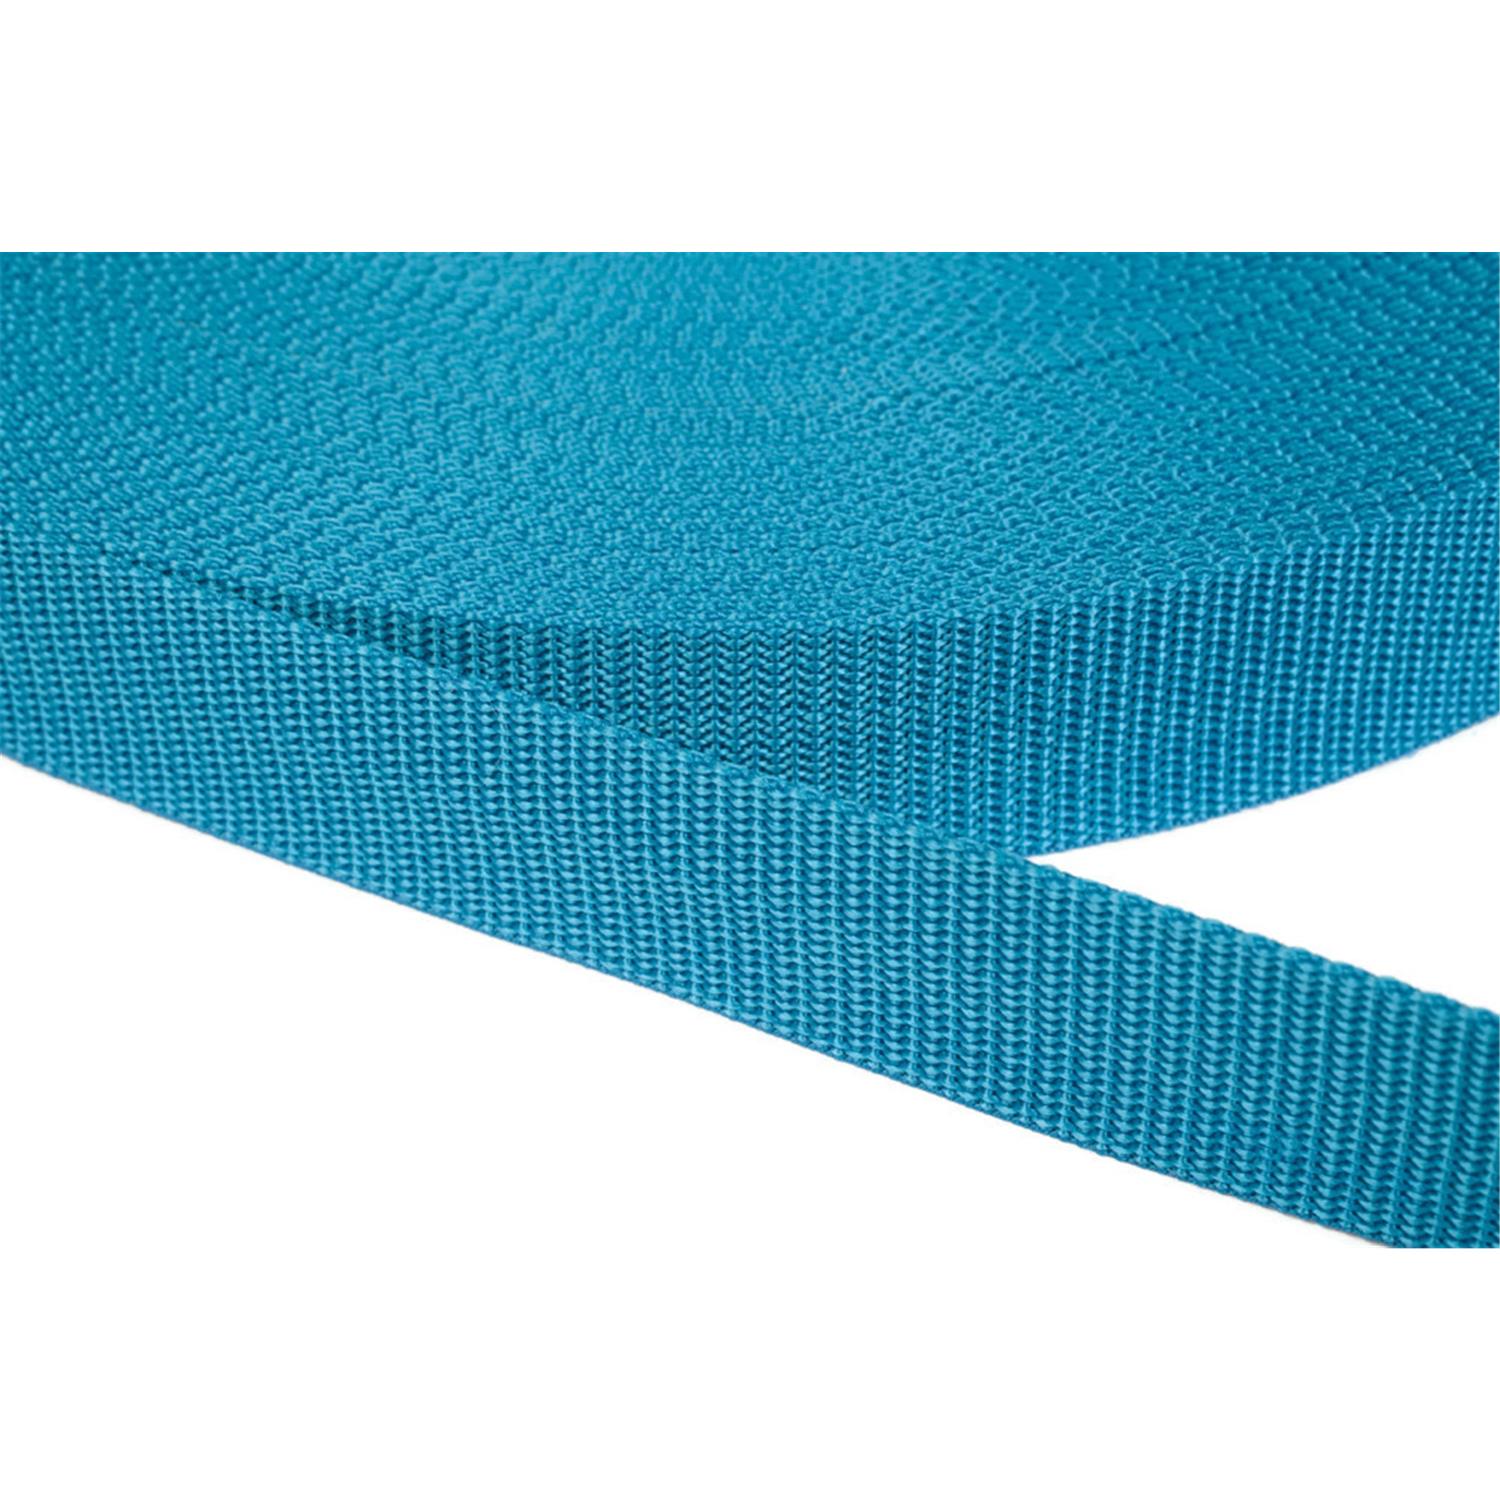 Gurtband 25mm breit aus Polypropylen in 41 Farben 29 - türkis 12 Meter